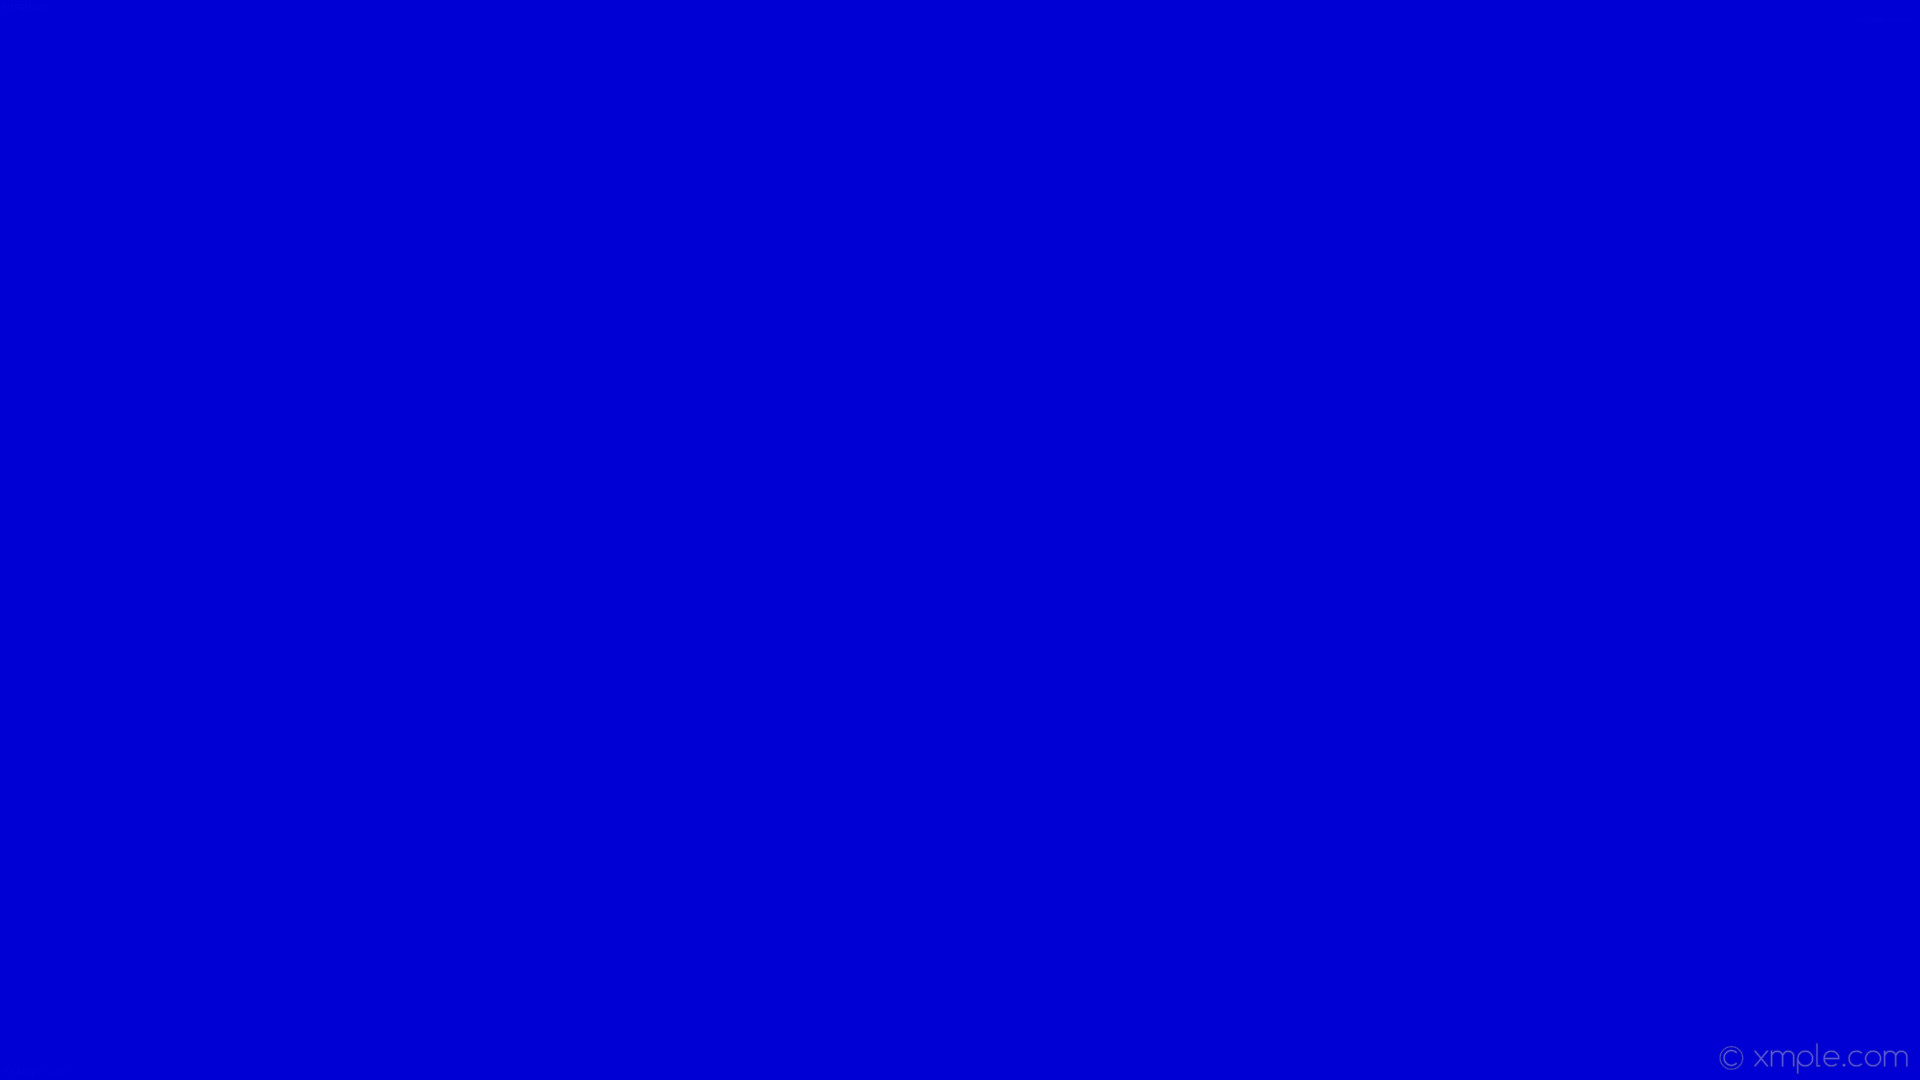 一色の壁紙,コバルトブルー,青い,バイオレット,エレクトリックブルー,紫の